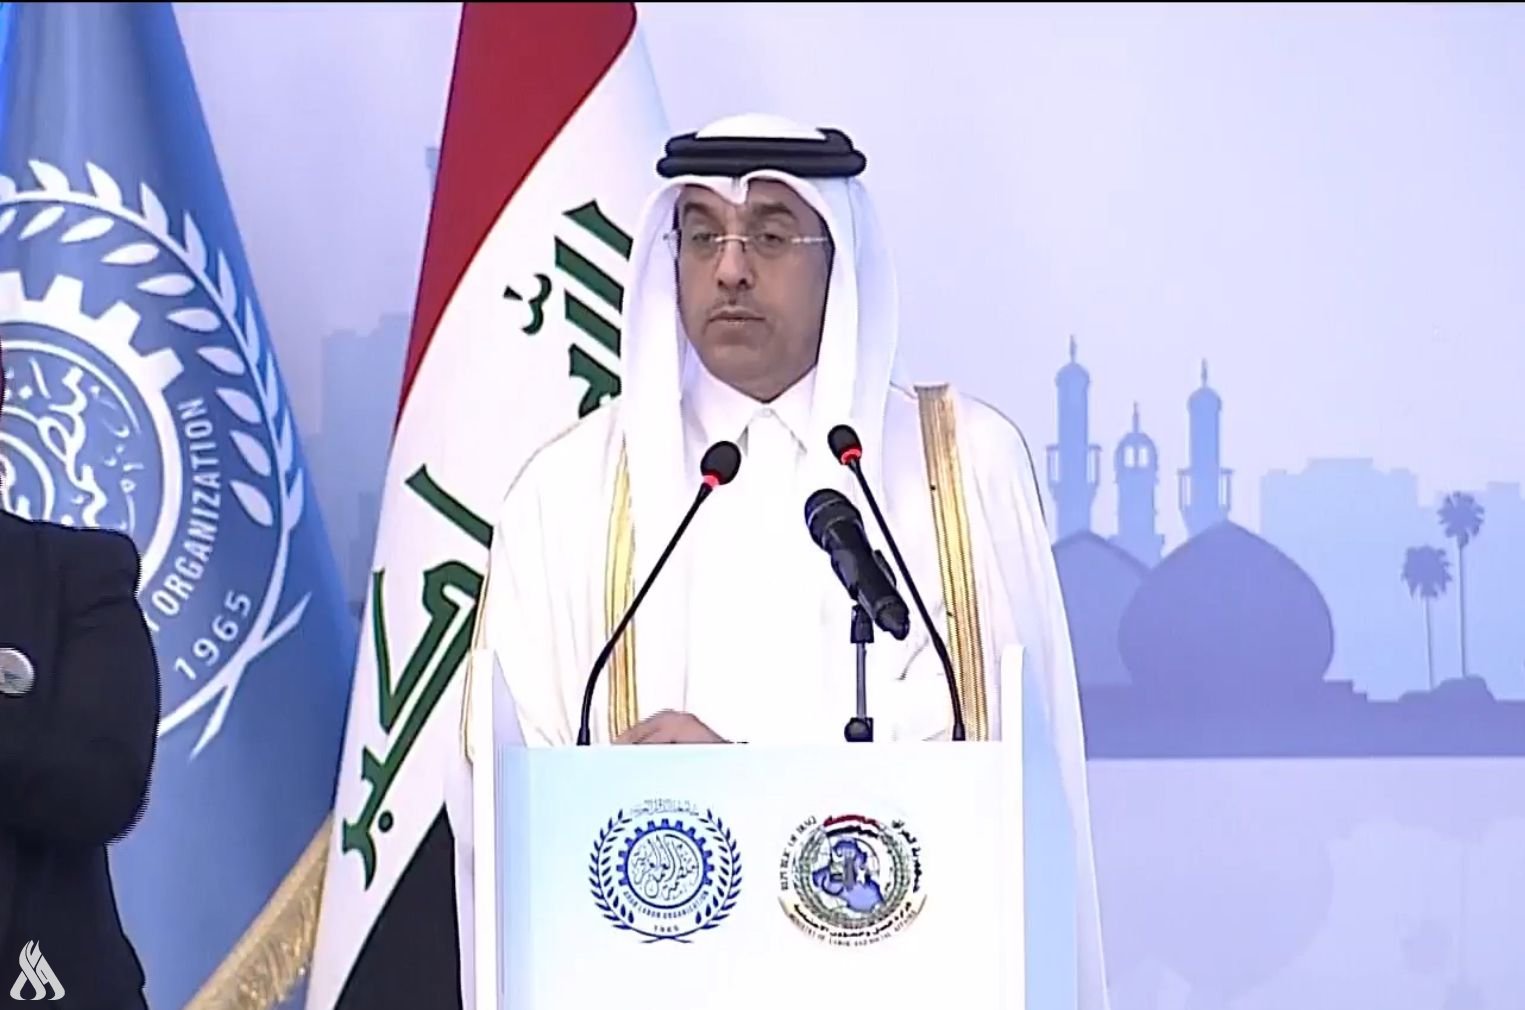 وزير العمل القطري: منظمة العمل العربية حققت خلال هذا العام الكثير من الإنجازات